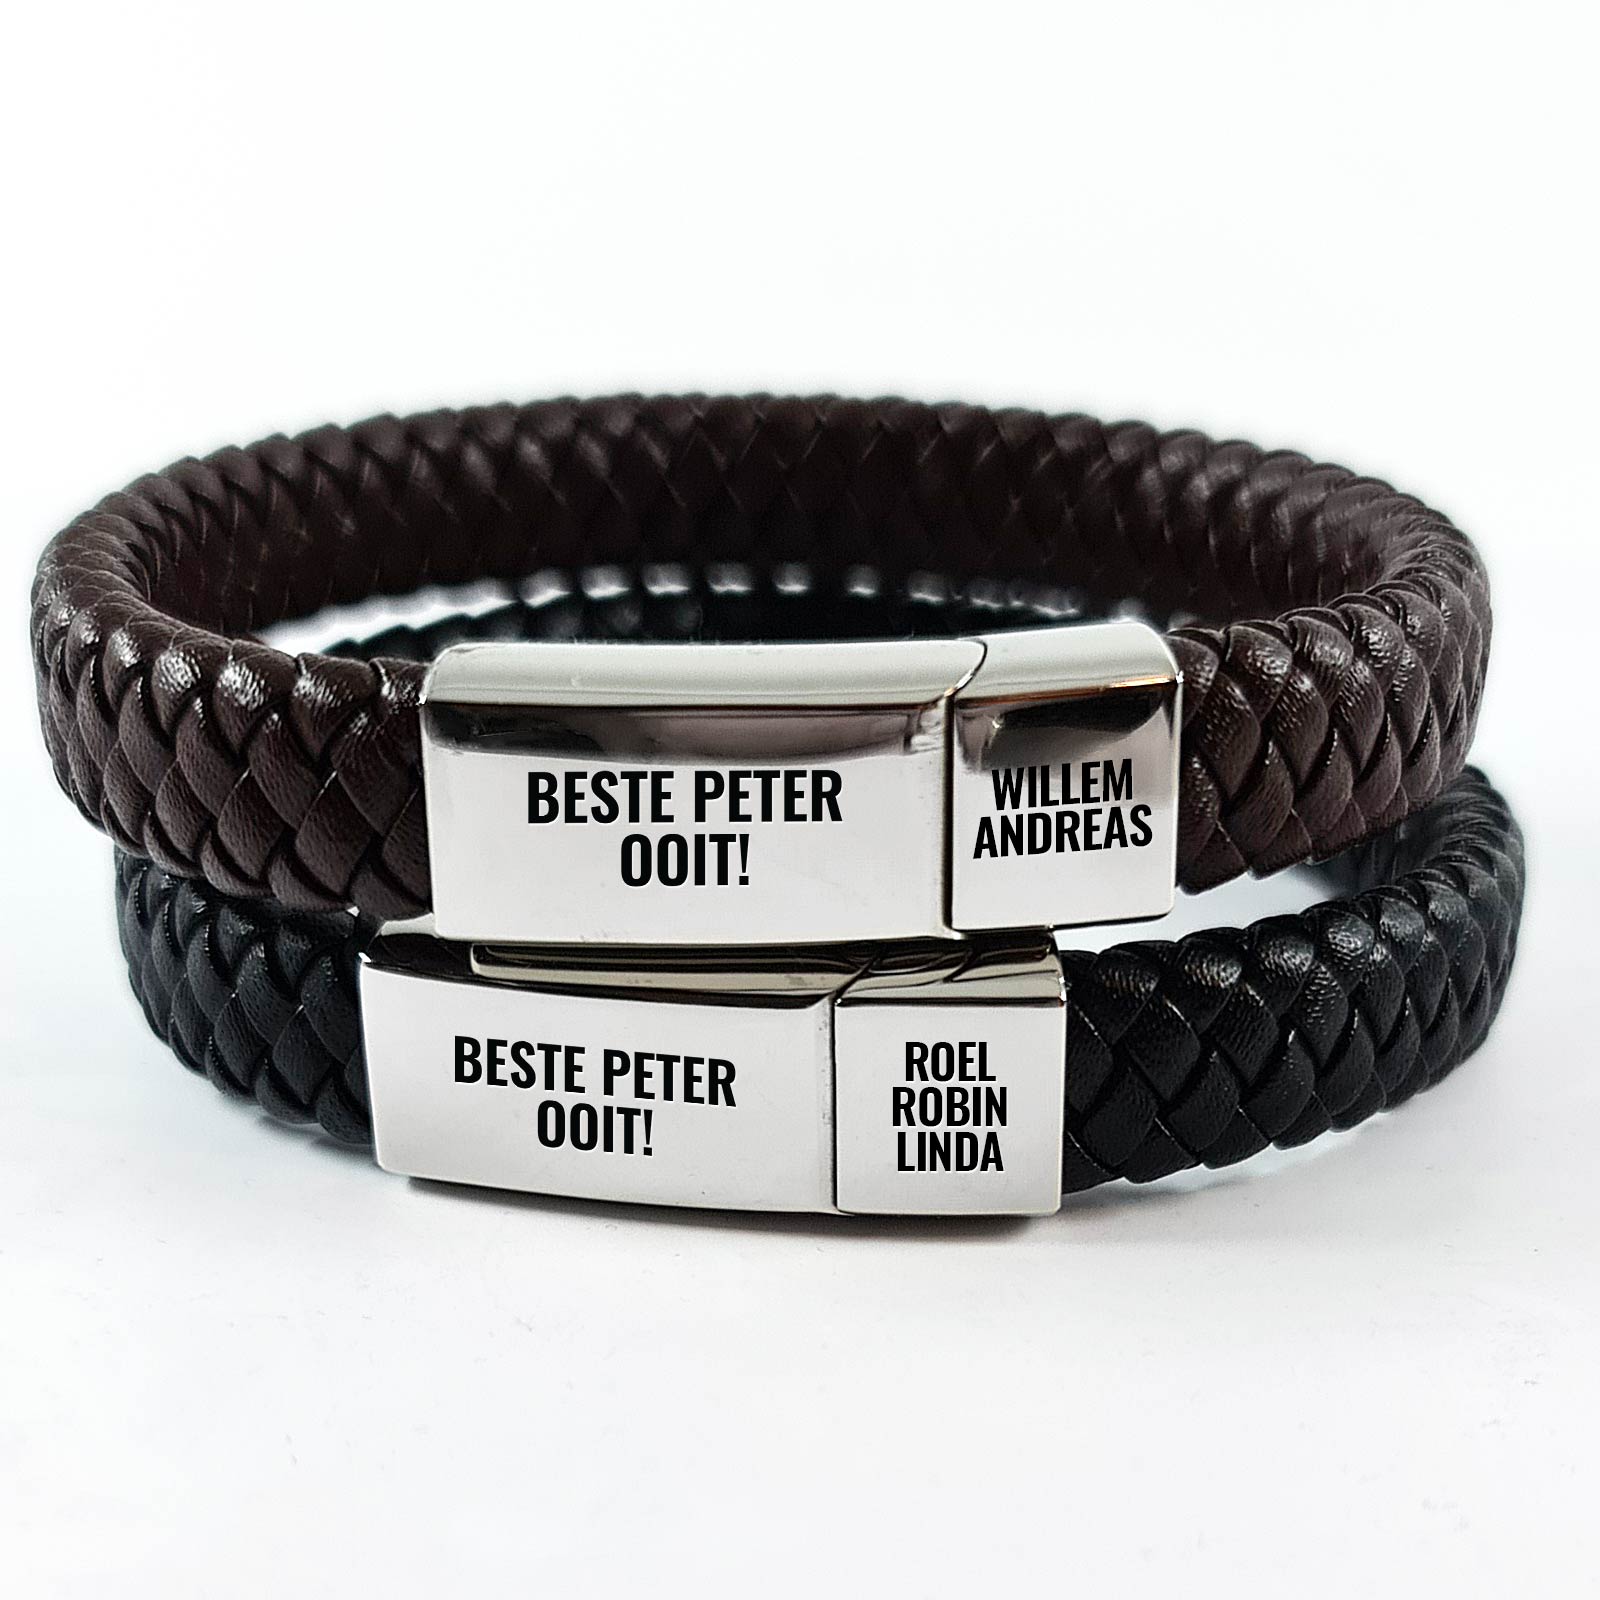 Gepersonaliseerde Armband voor Peter - Bella Mia